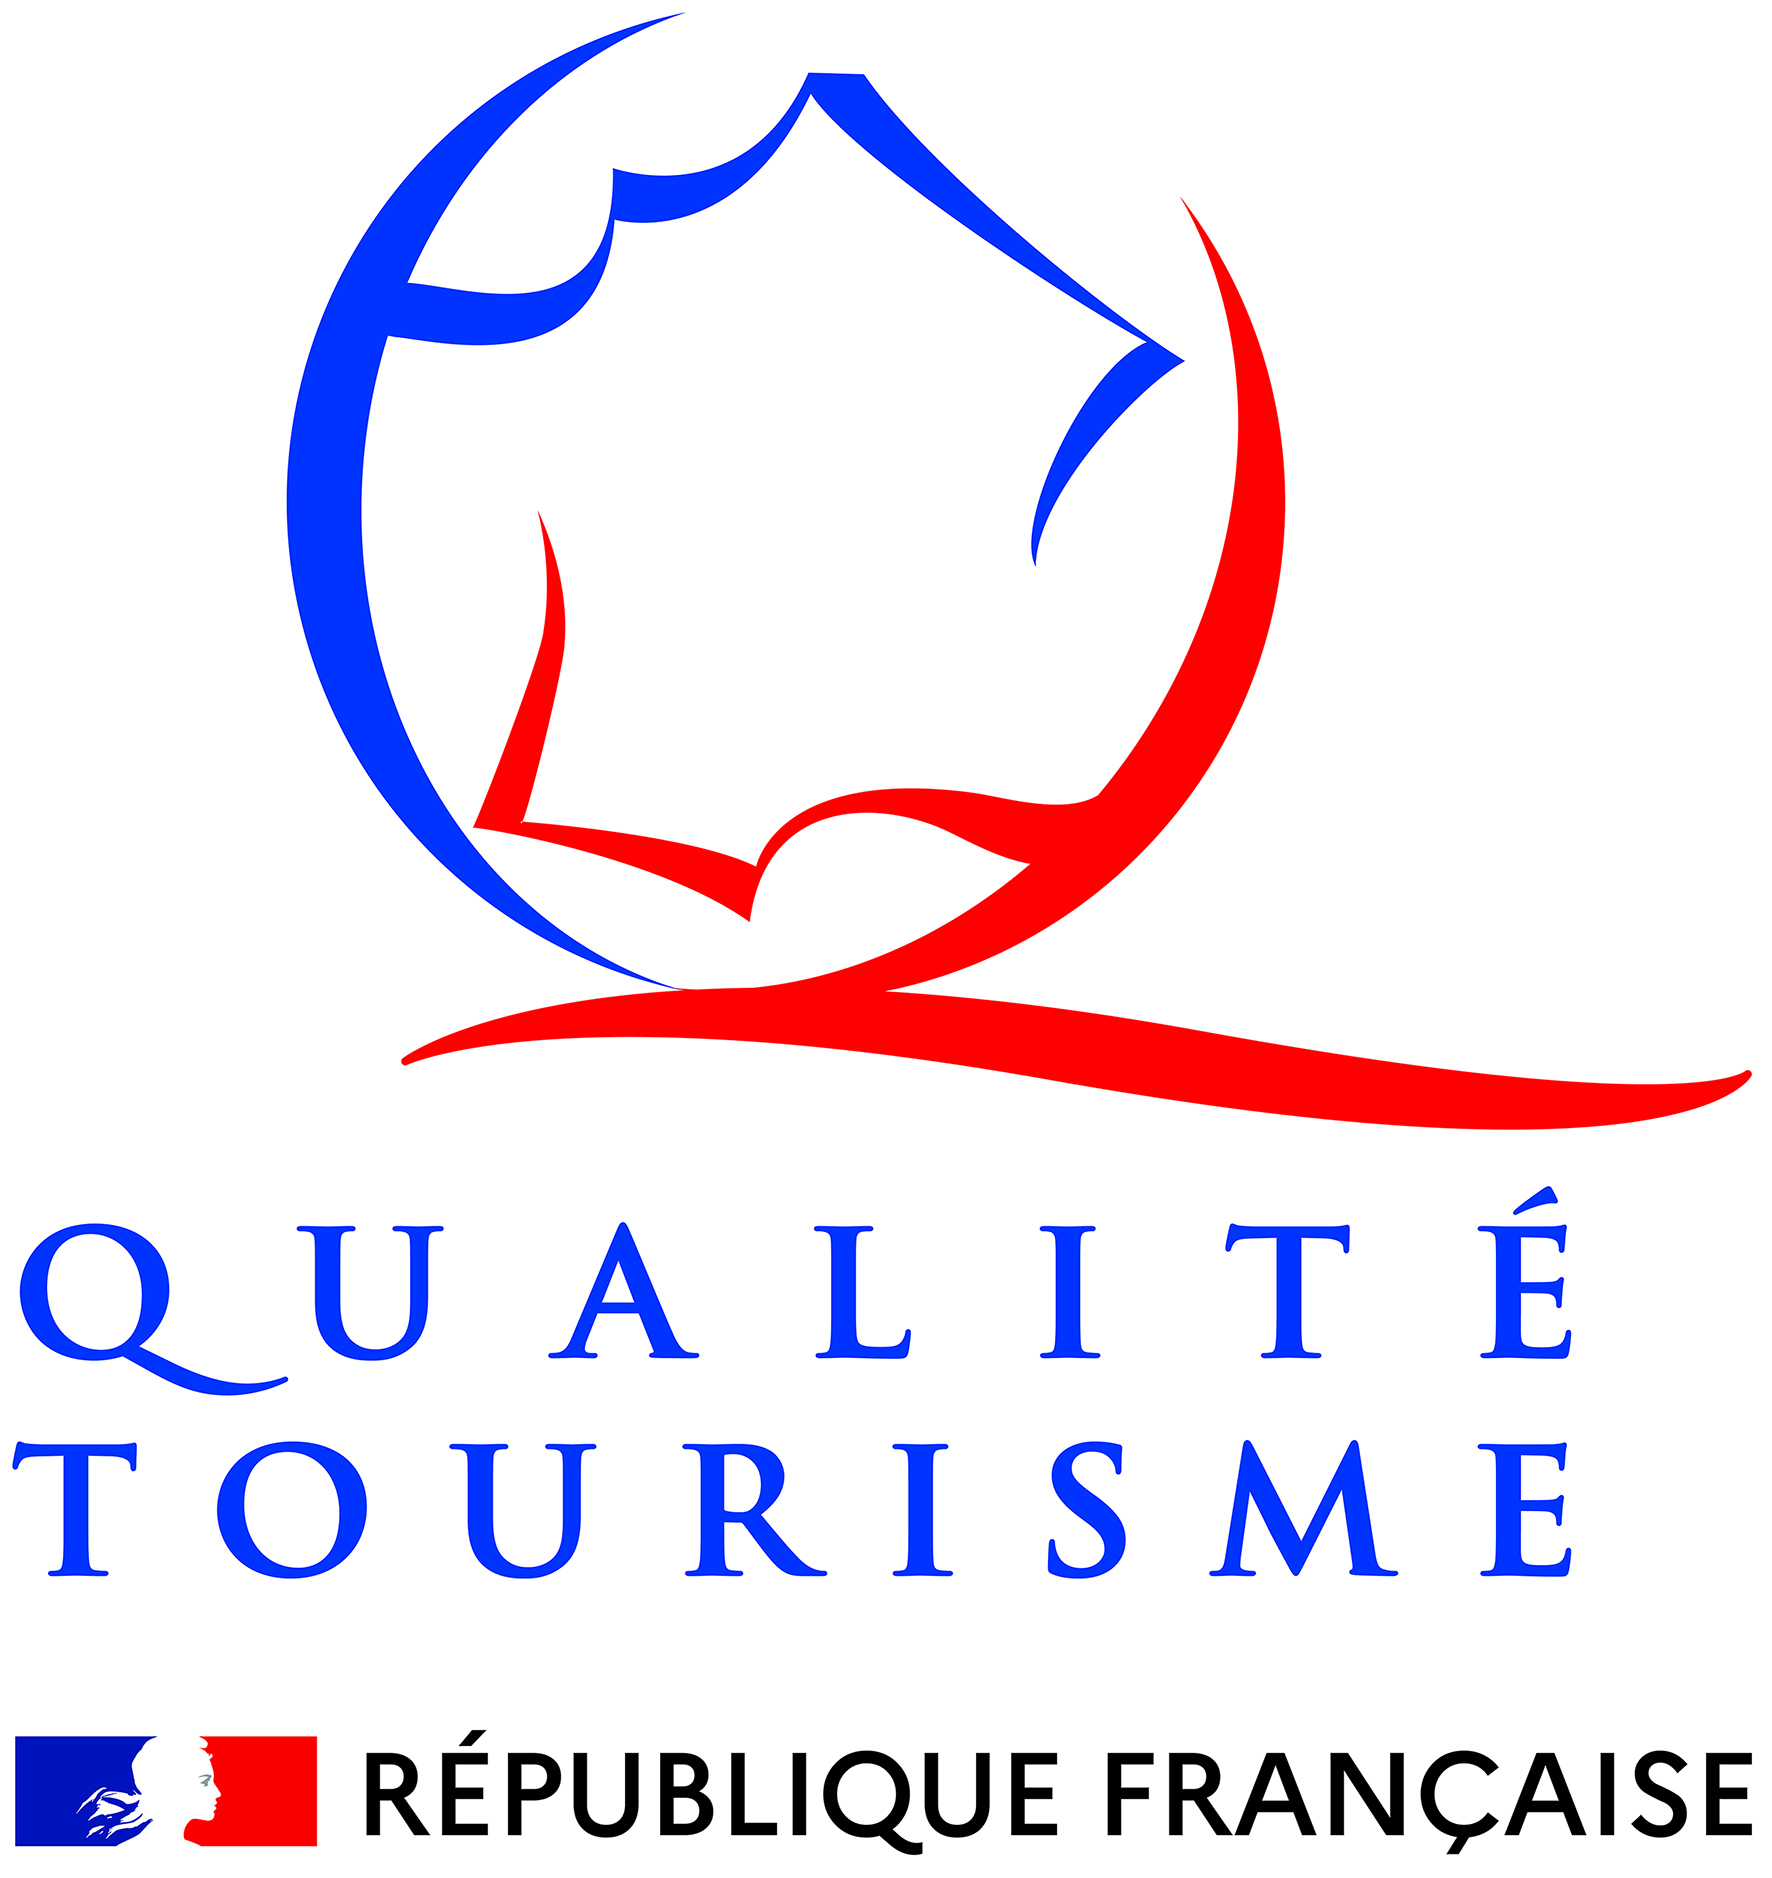 Qualite-tourisme-coul_cartouche_RF.jpg